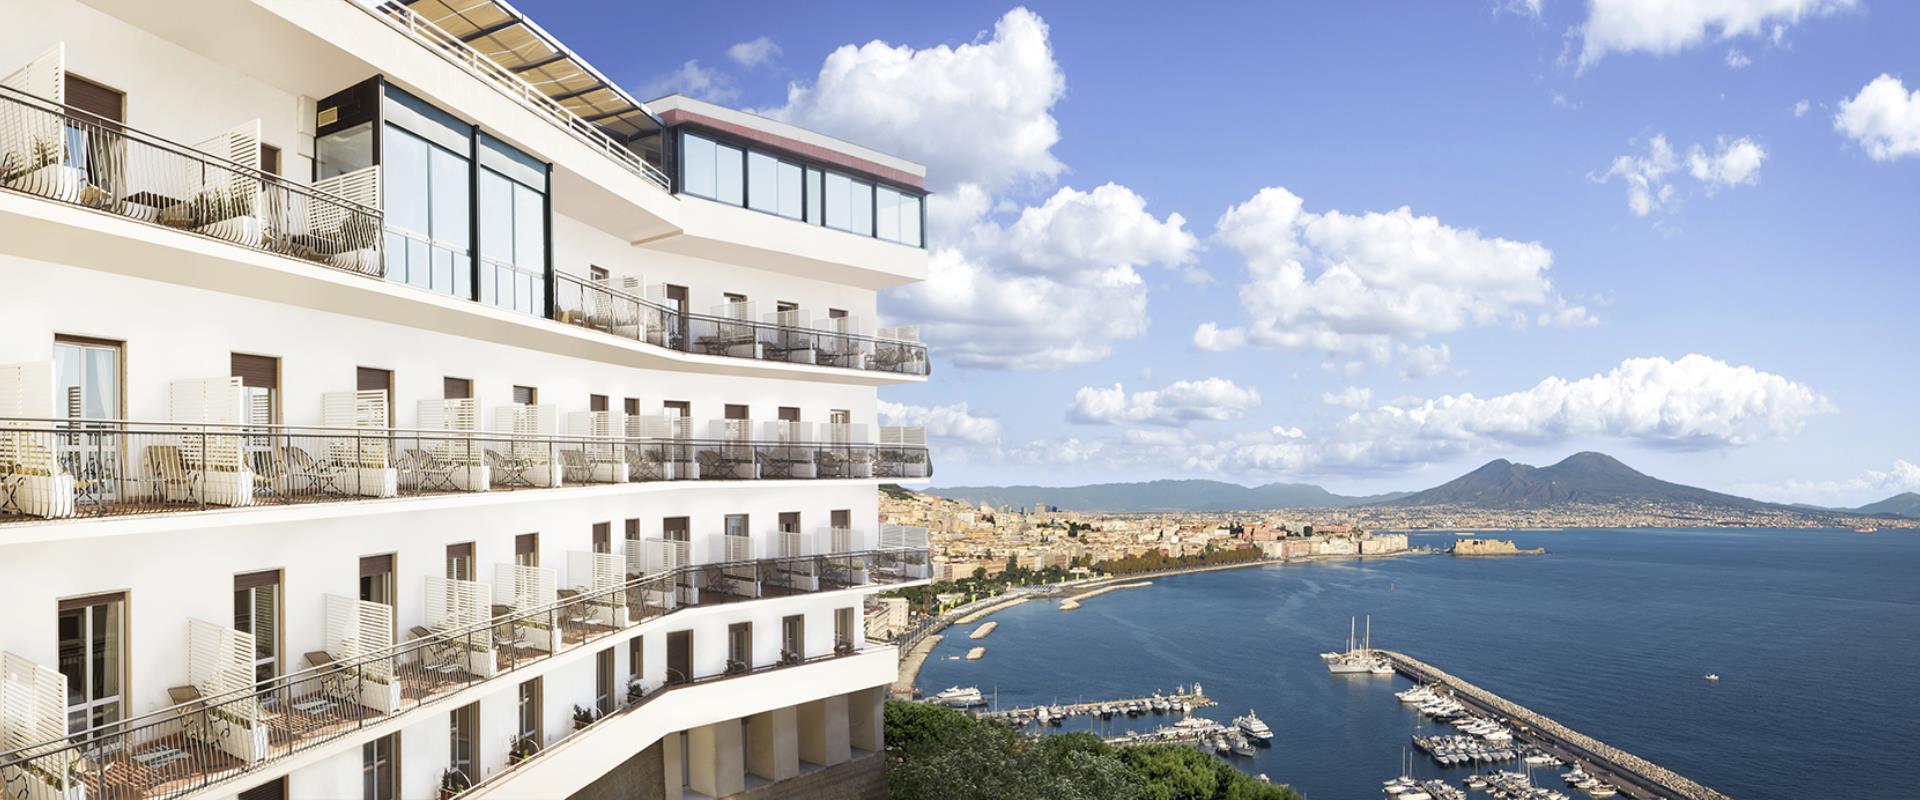 Hotel Paradiso Naples